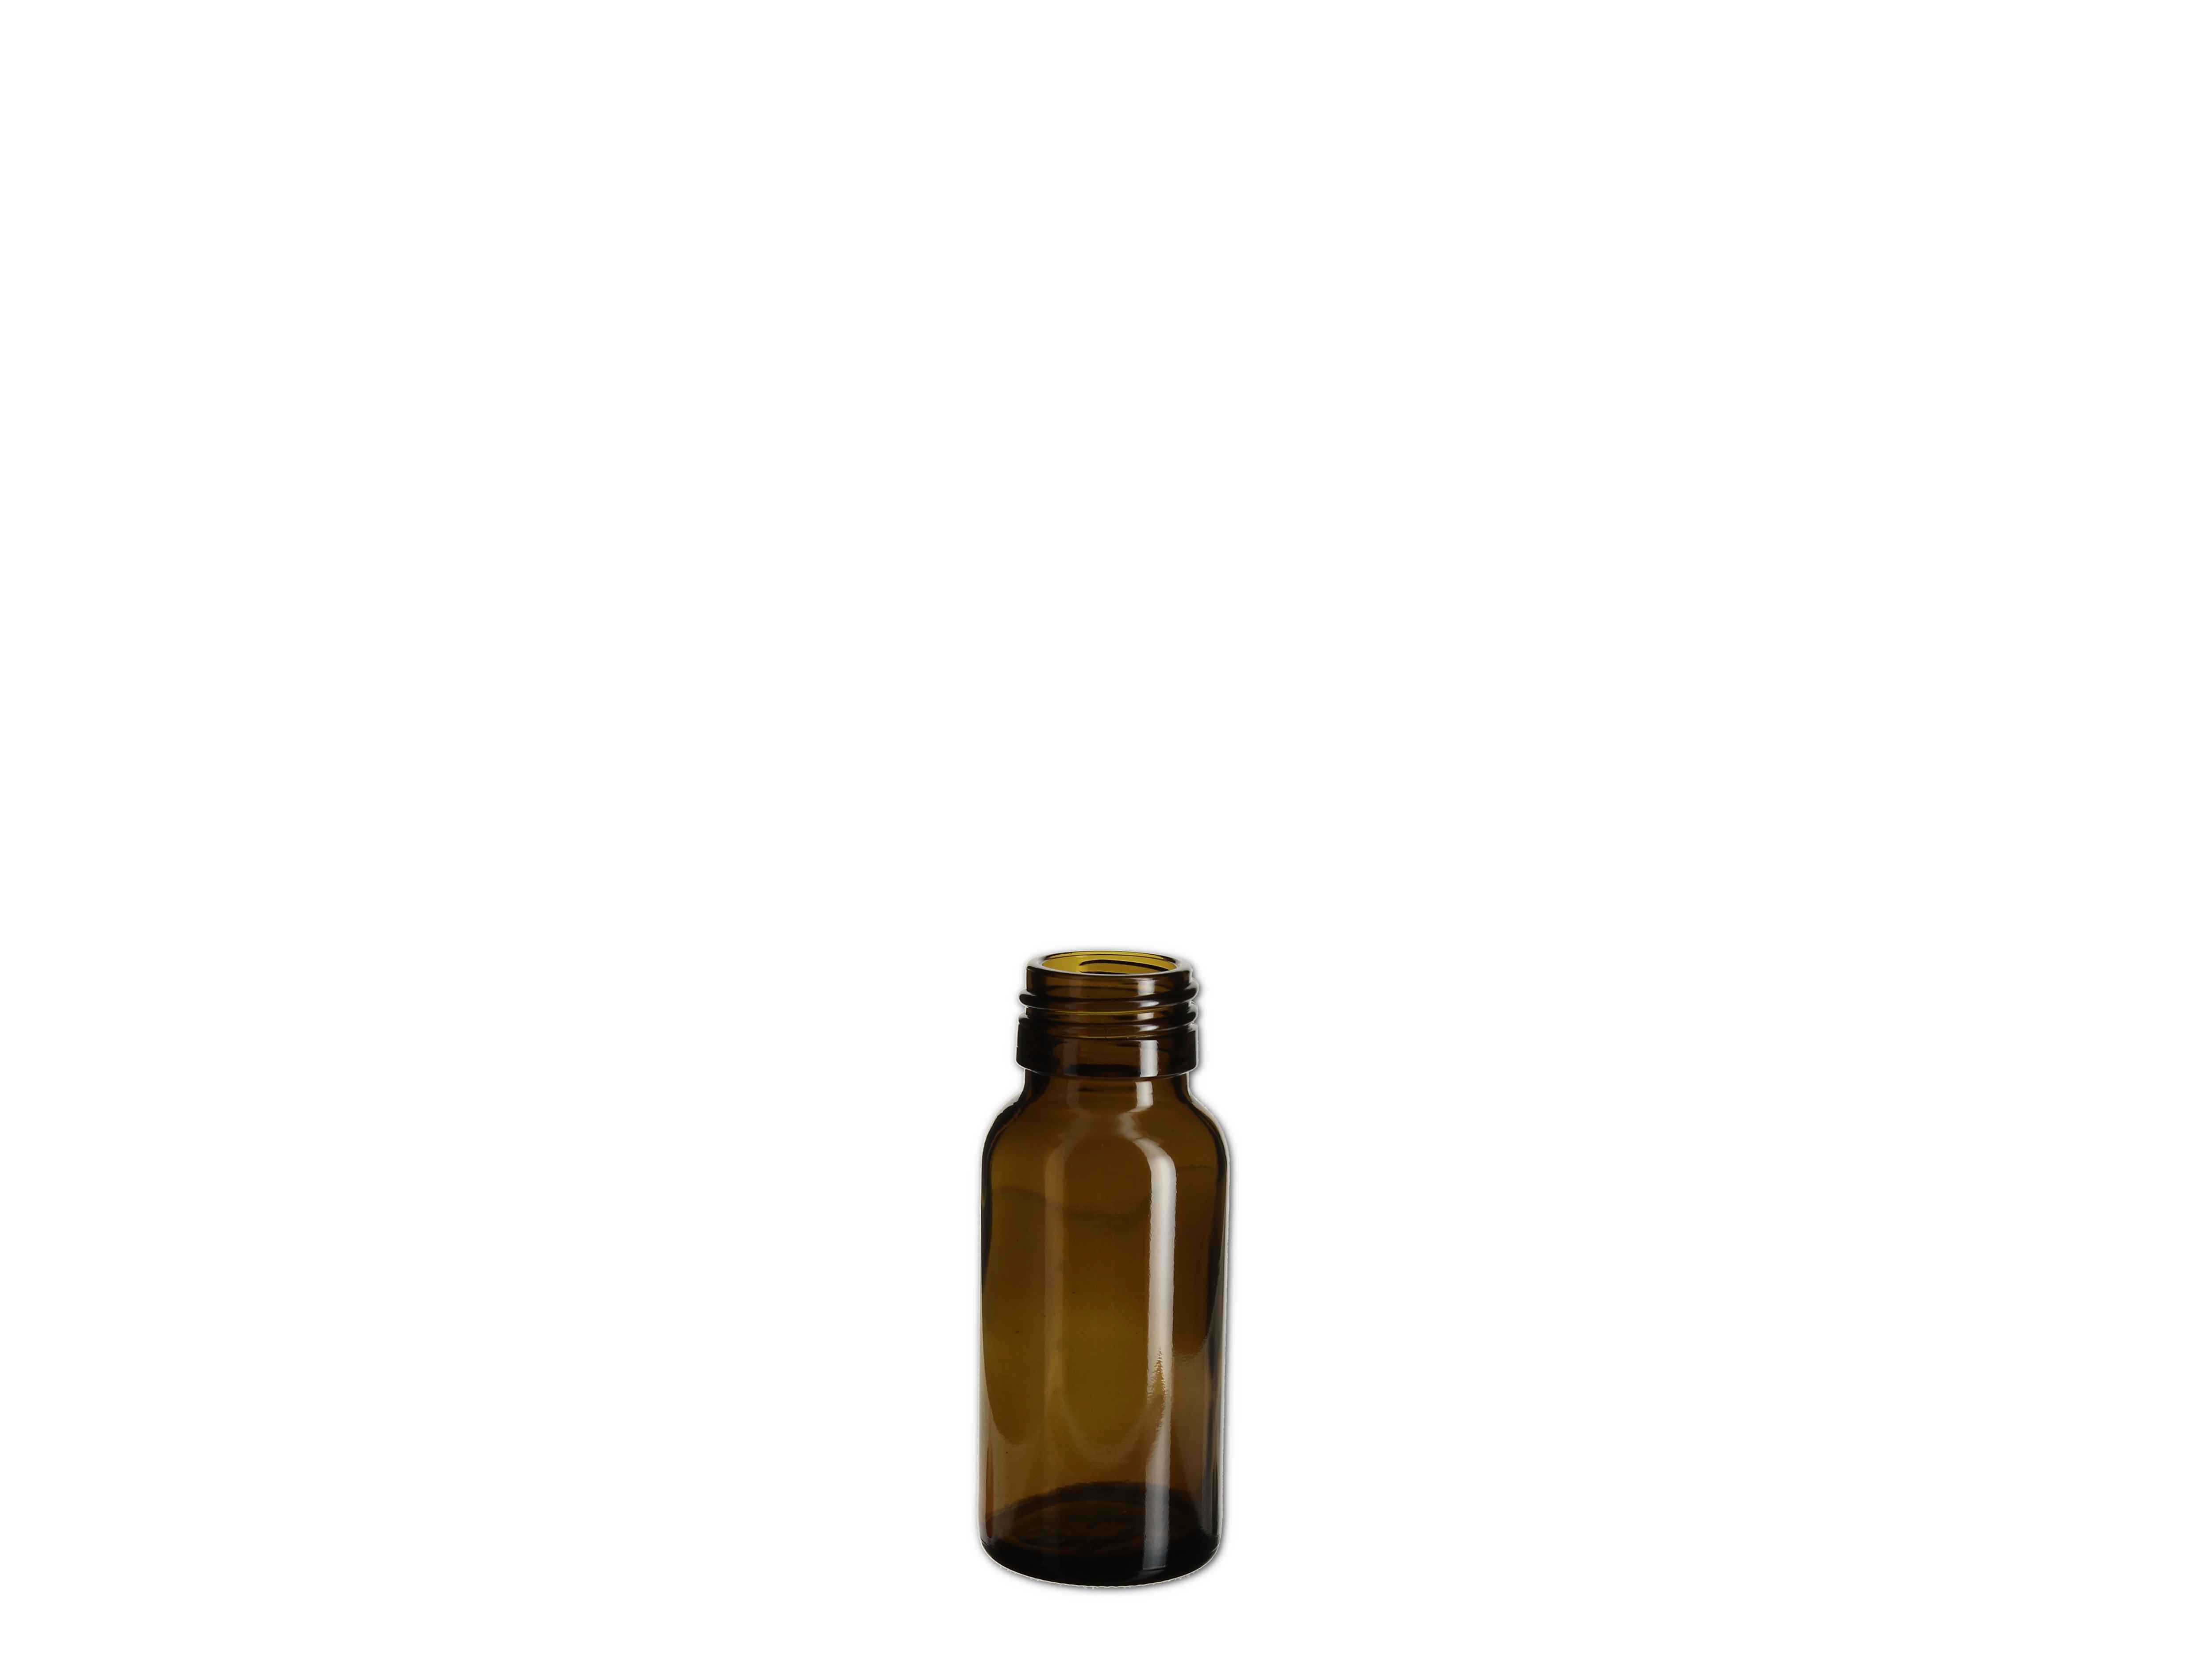    Medizin Flasche braun - PP28 - 50ml